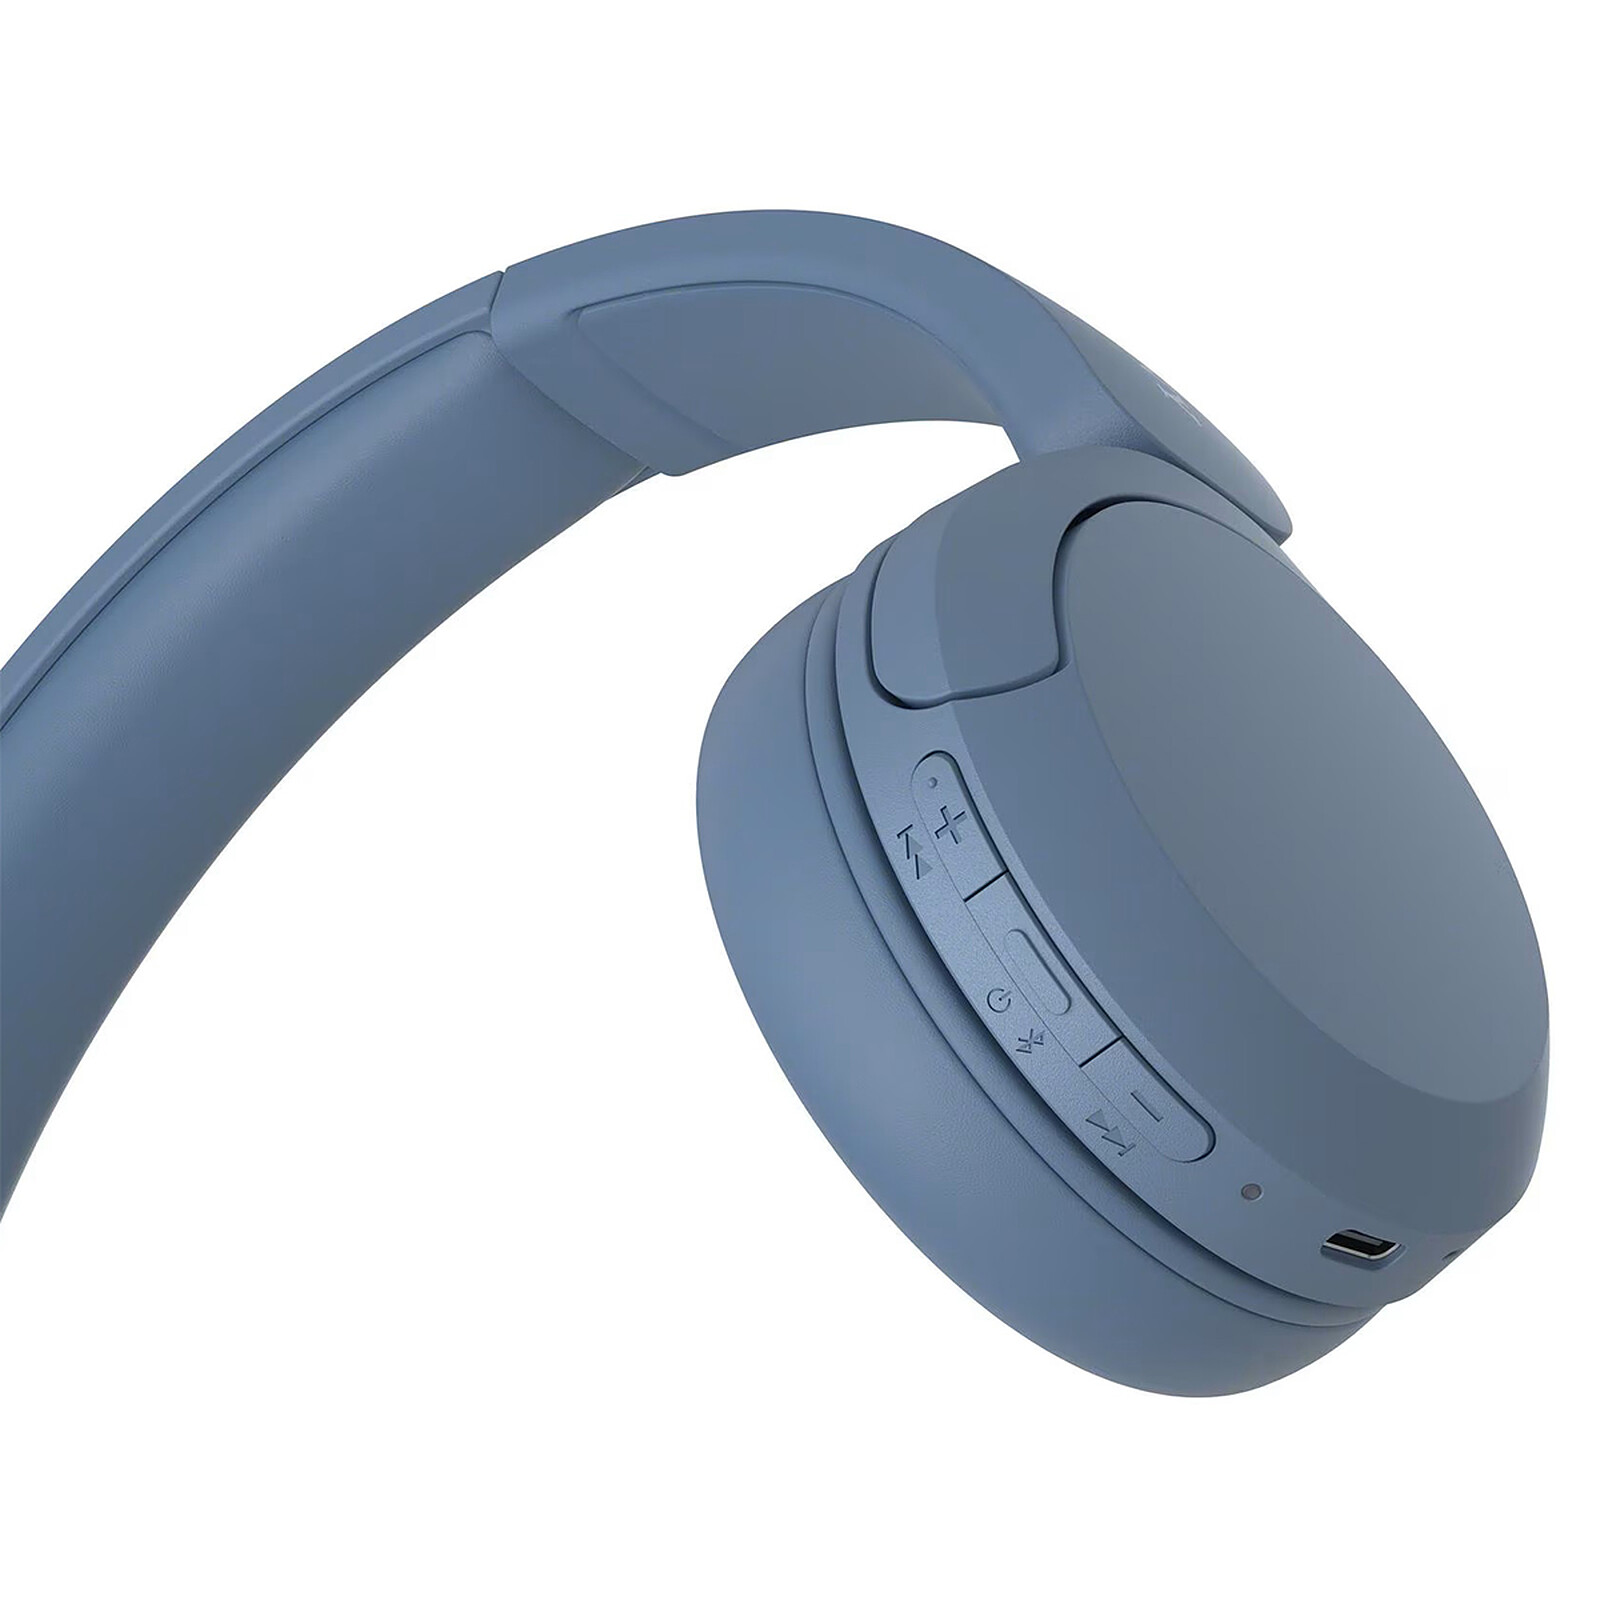 Sony WH-CH510 Auriculares Inalámbrico Diadema Llamadas/Música USB